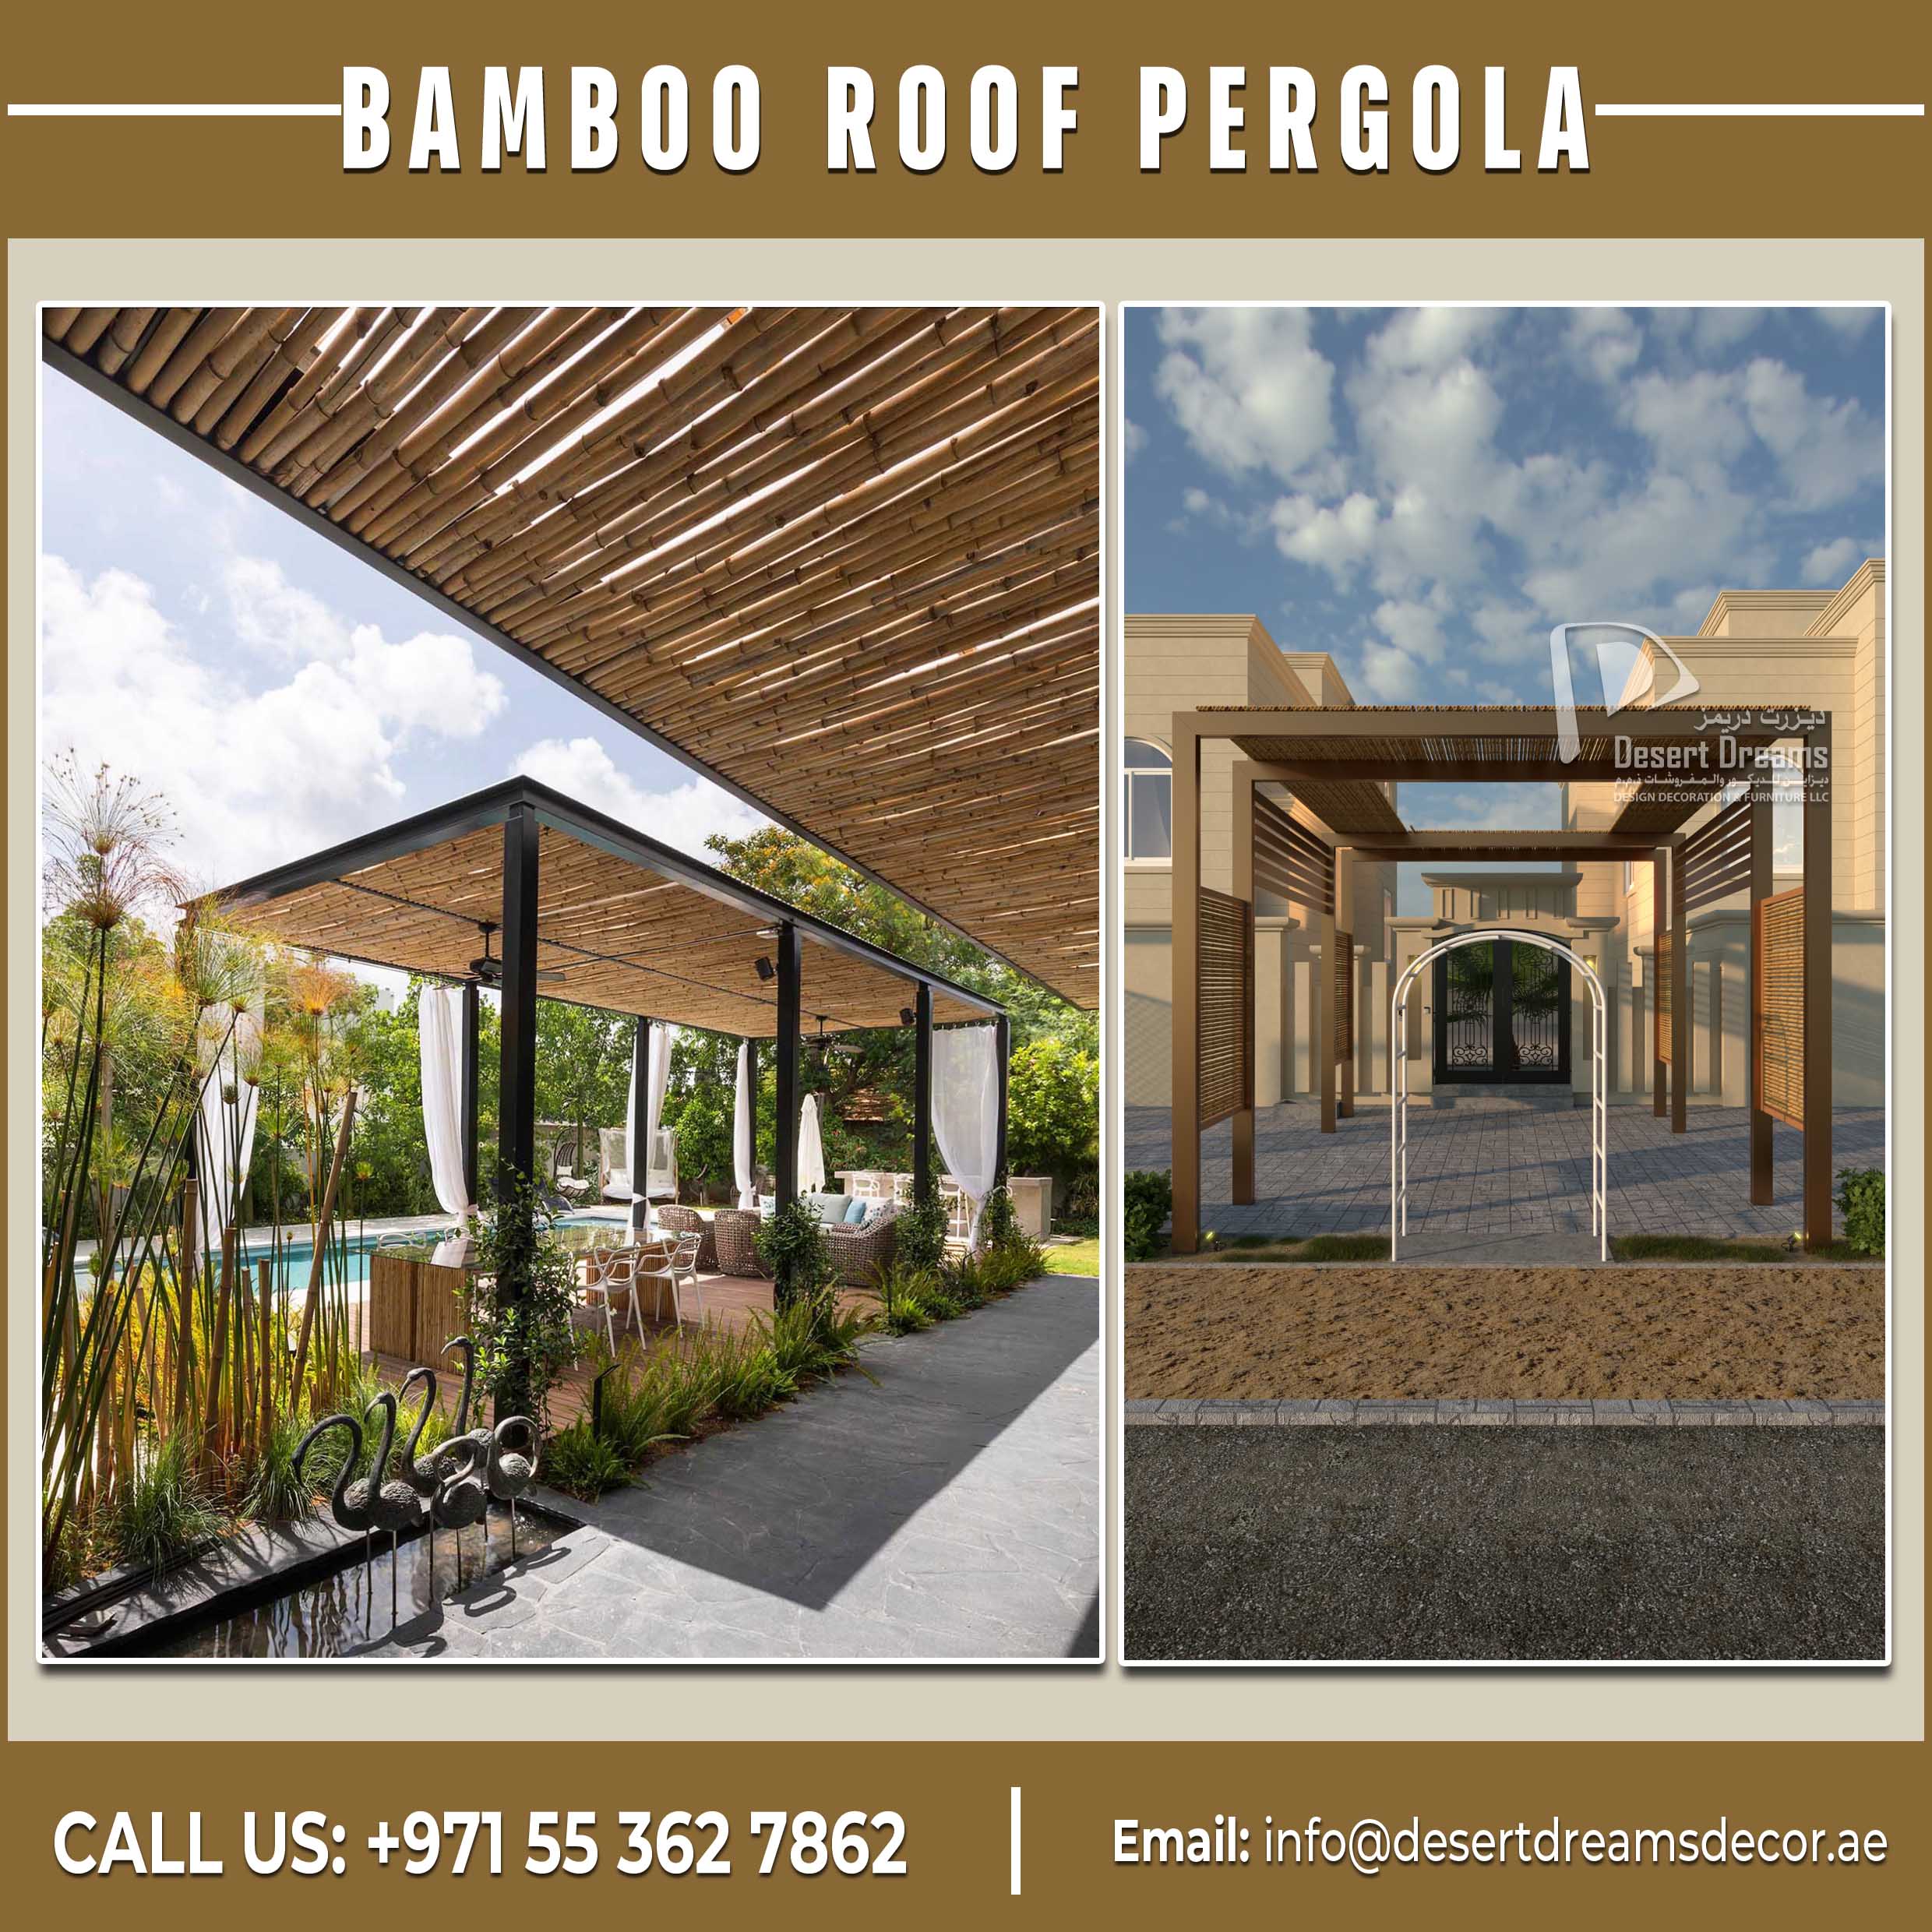 Quality Bamboo Roof Pergola Uae | Aluminum and Wooden Pergolas.